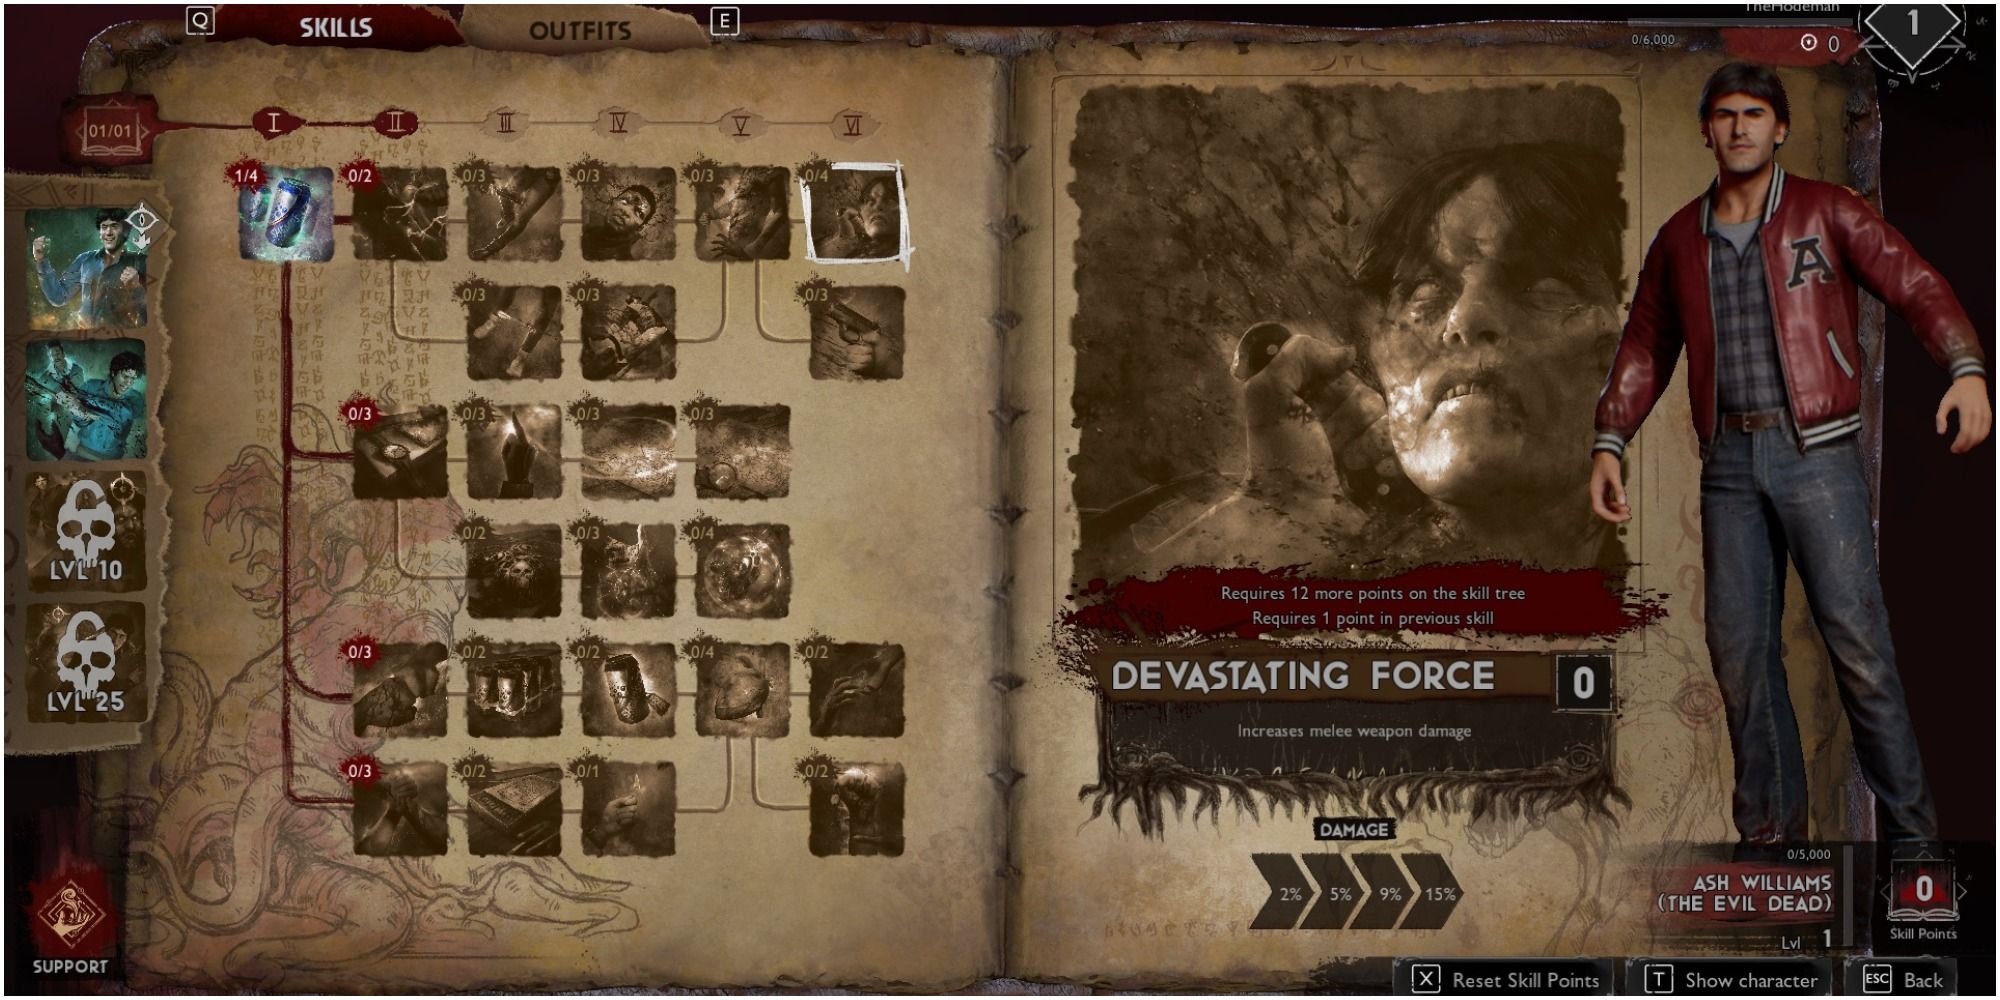 Evil Dead The Game Support Skill Devastating Force Description